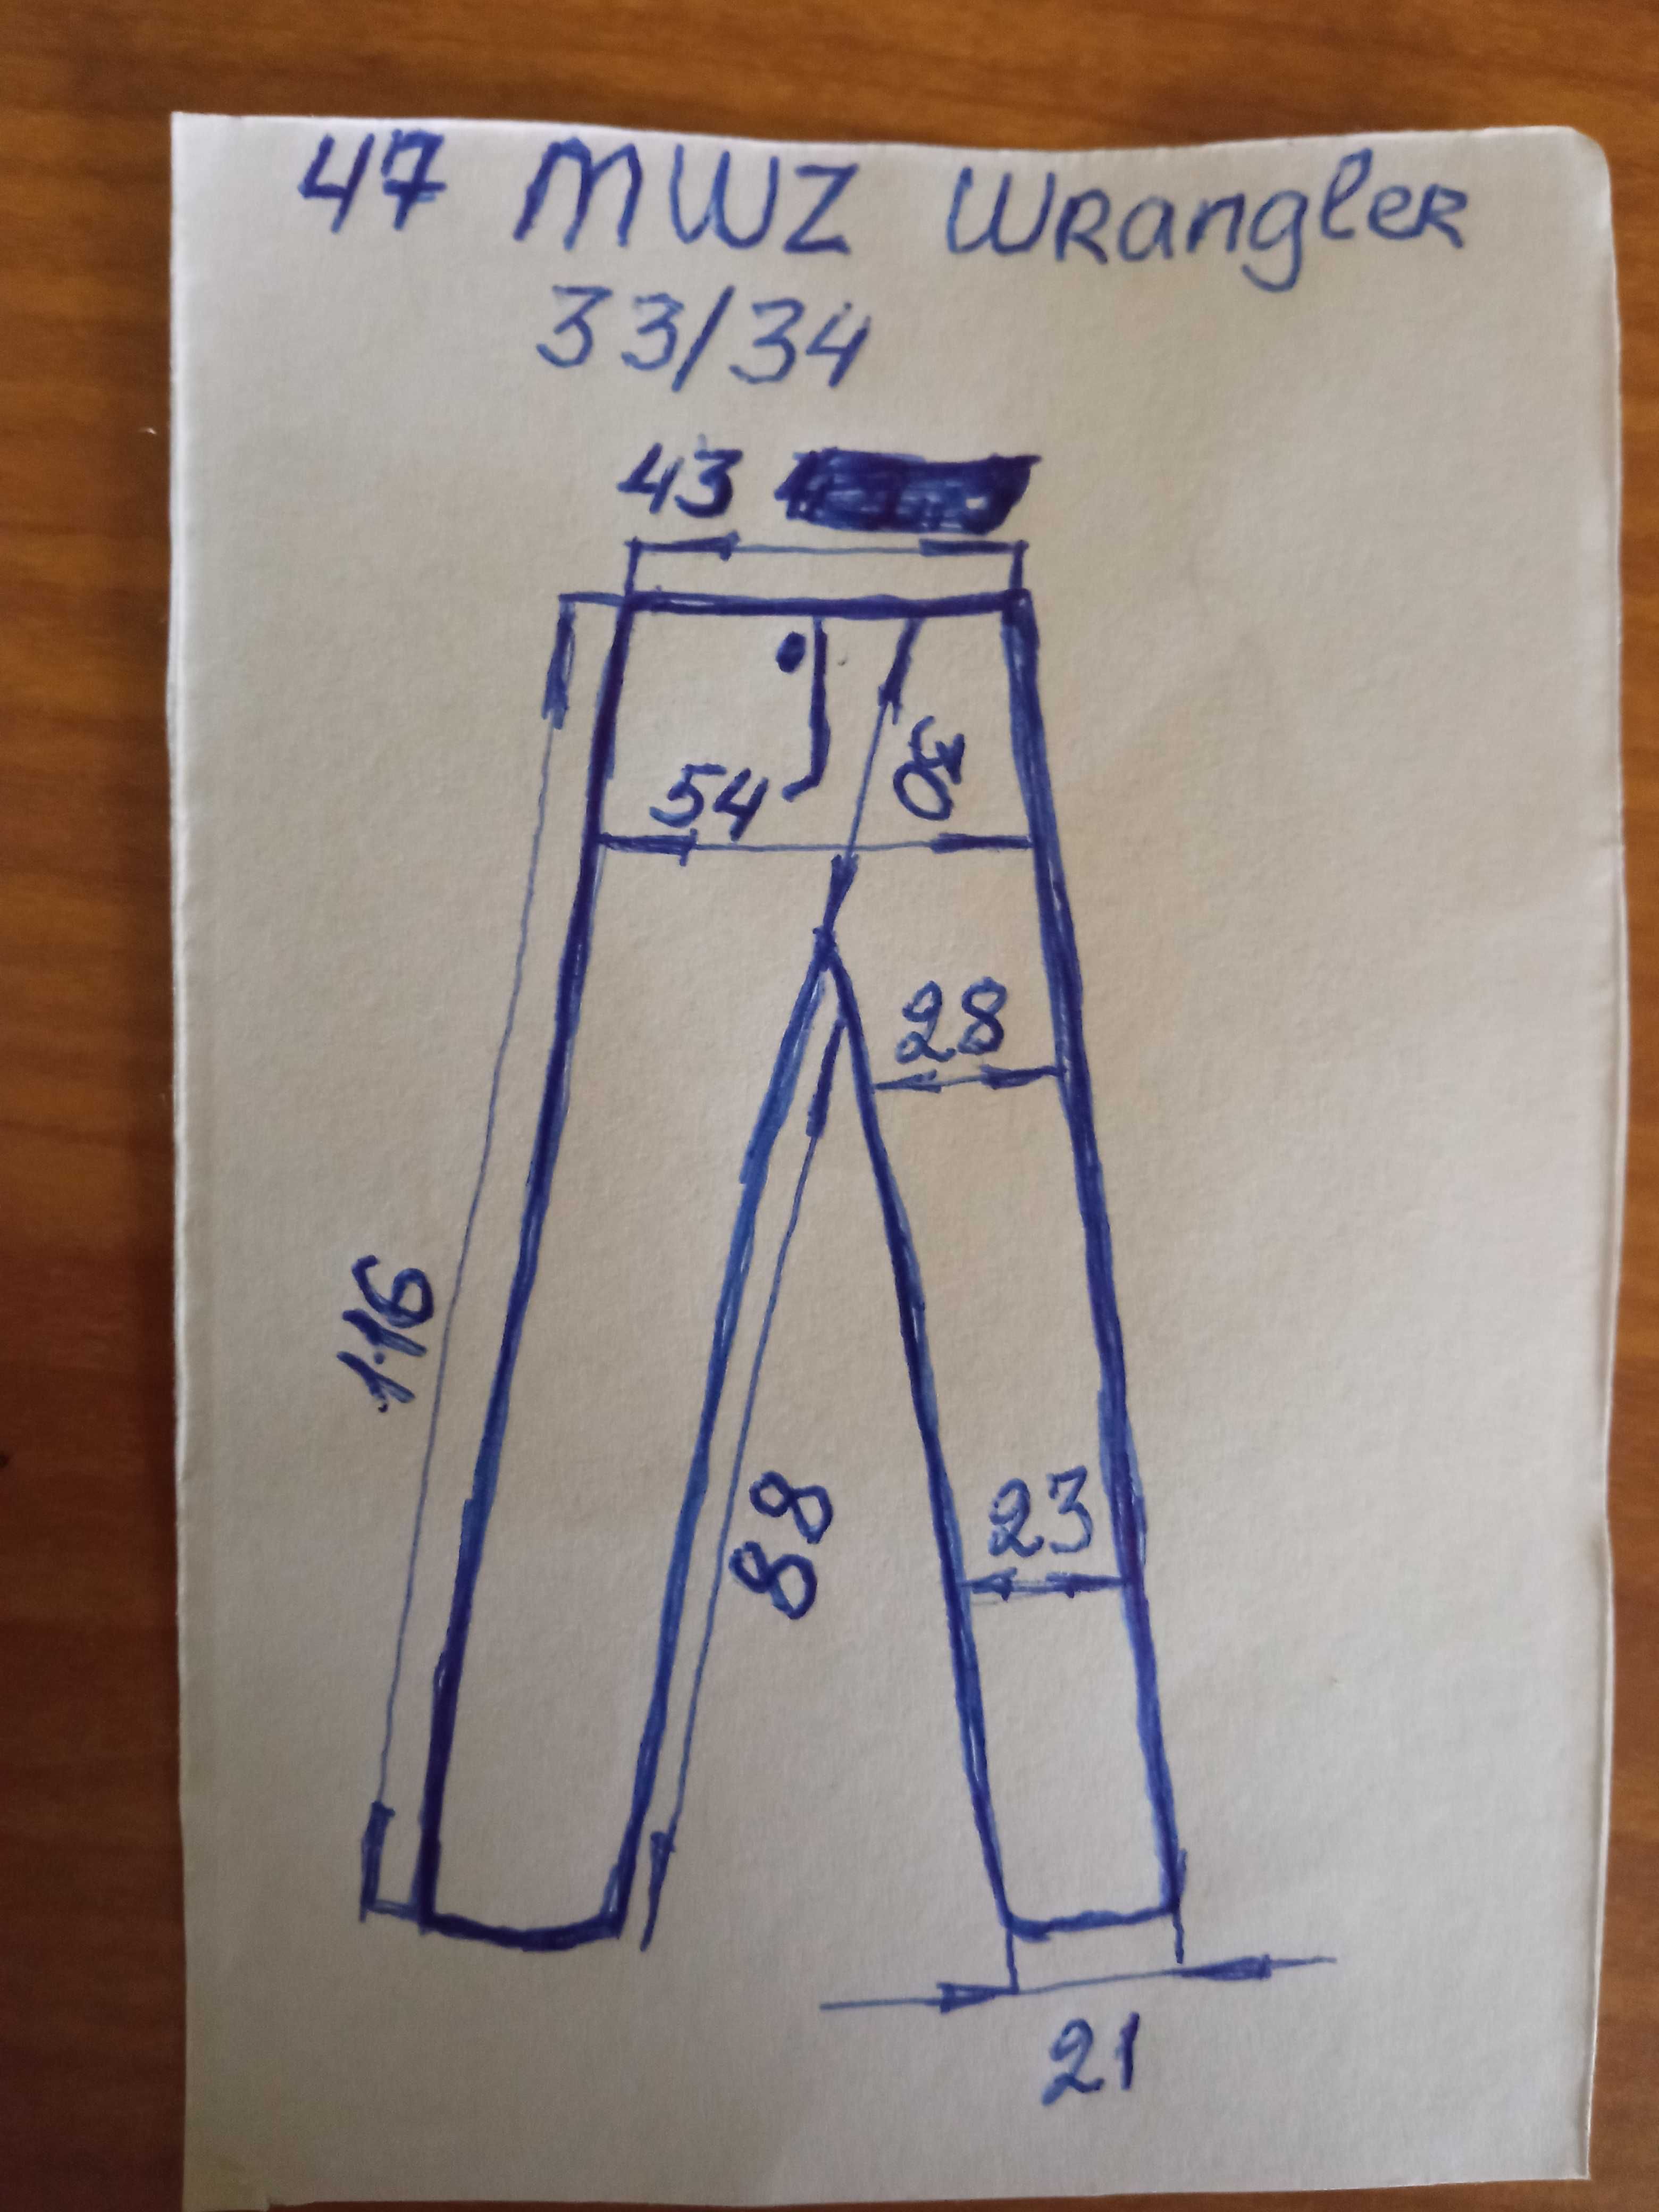 Wrangler 47MWZ jeans meskie